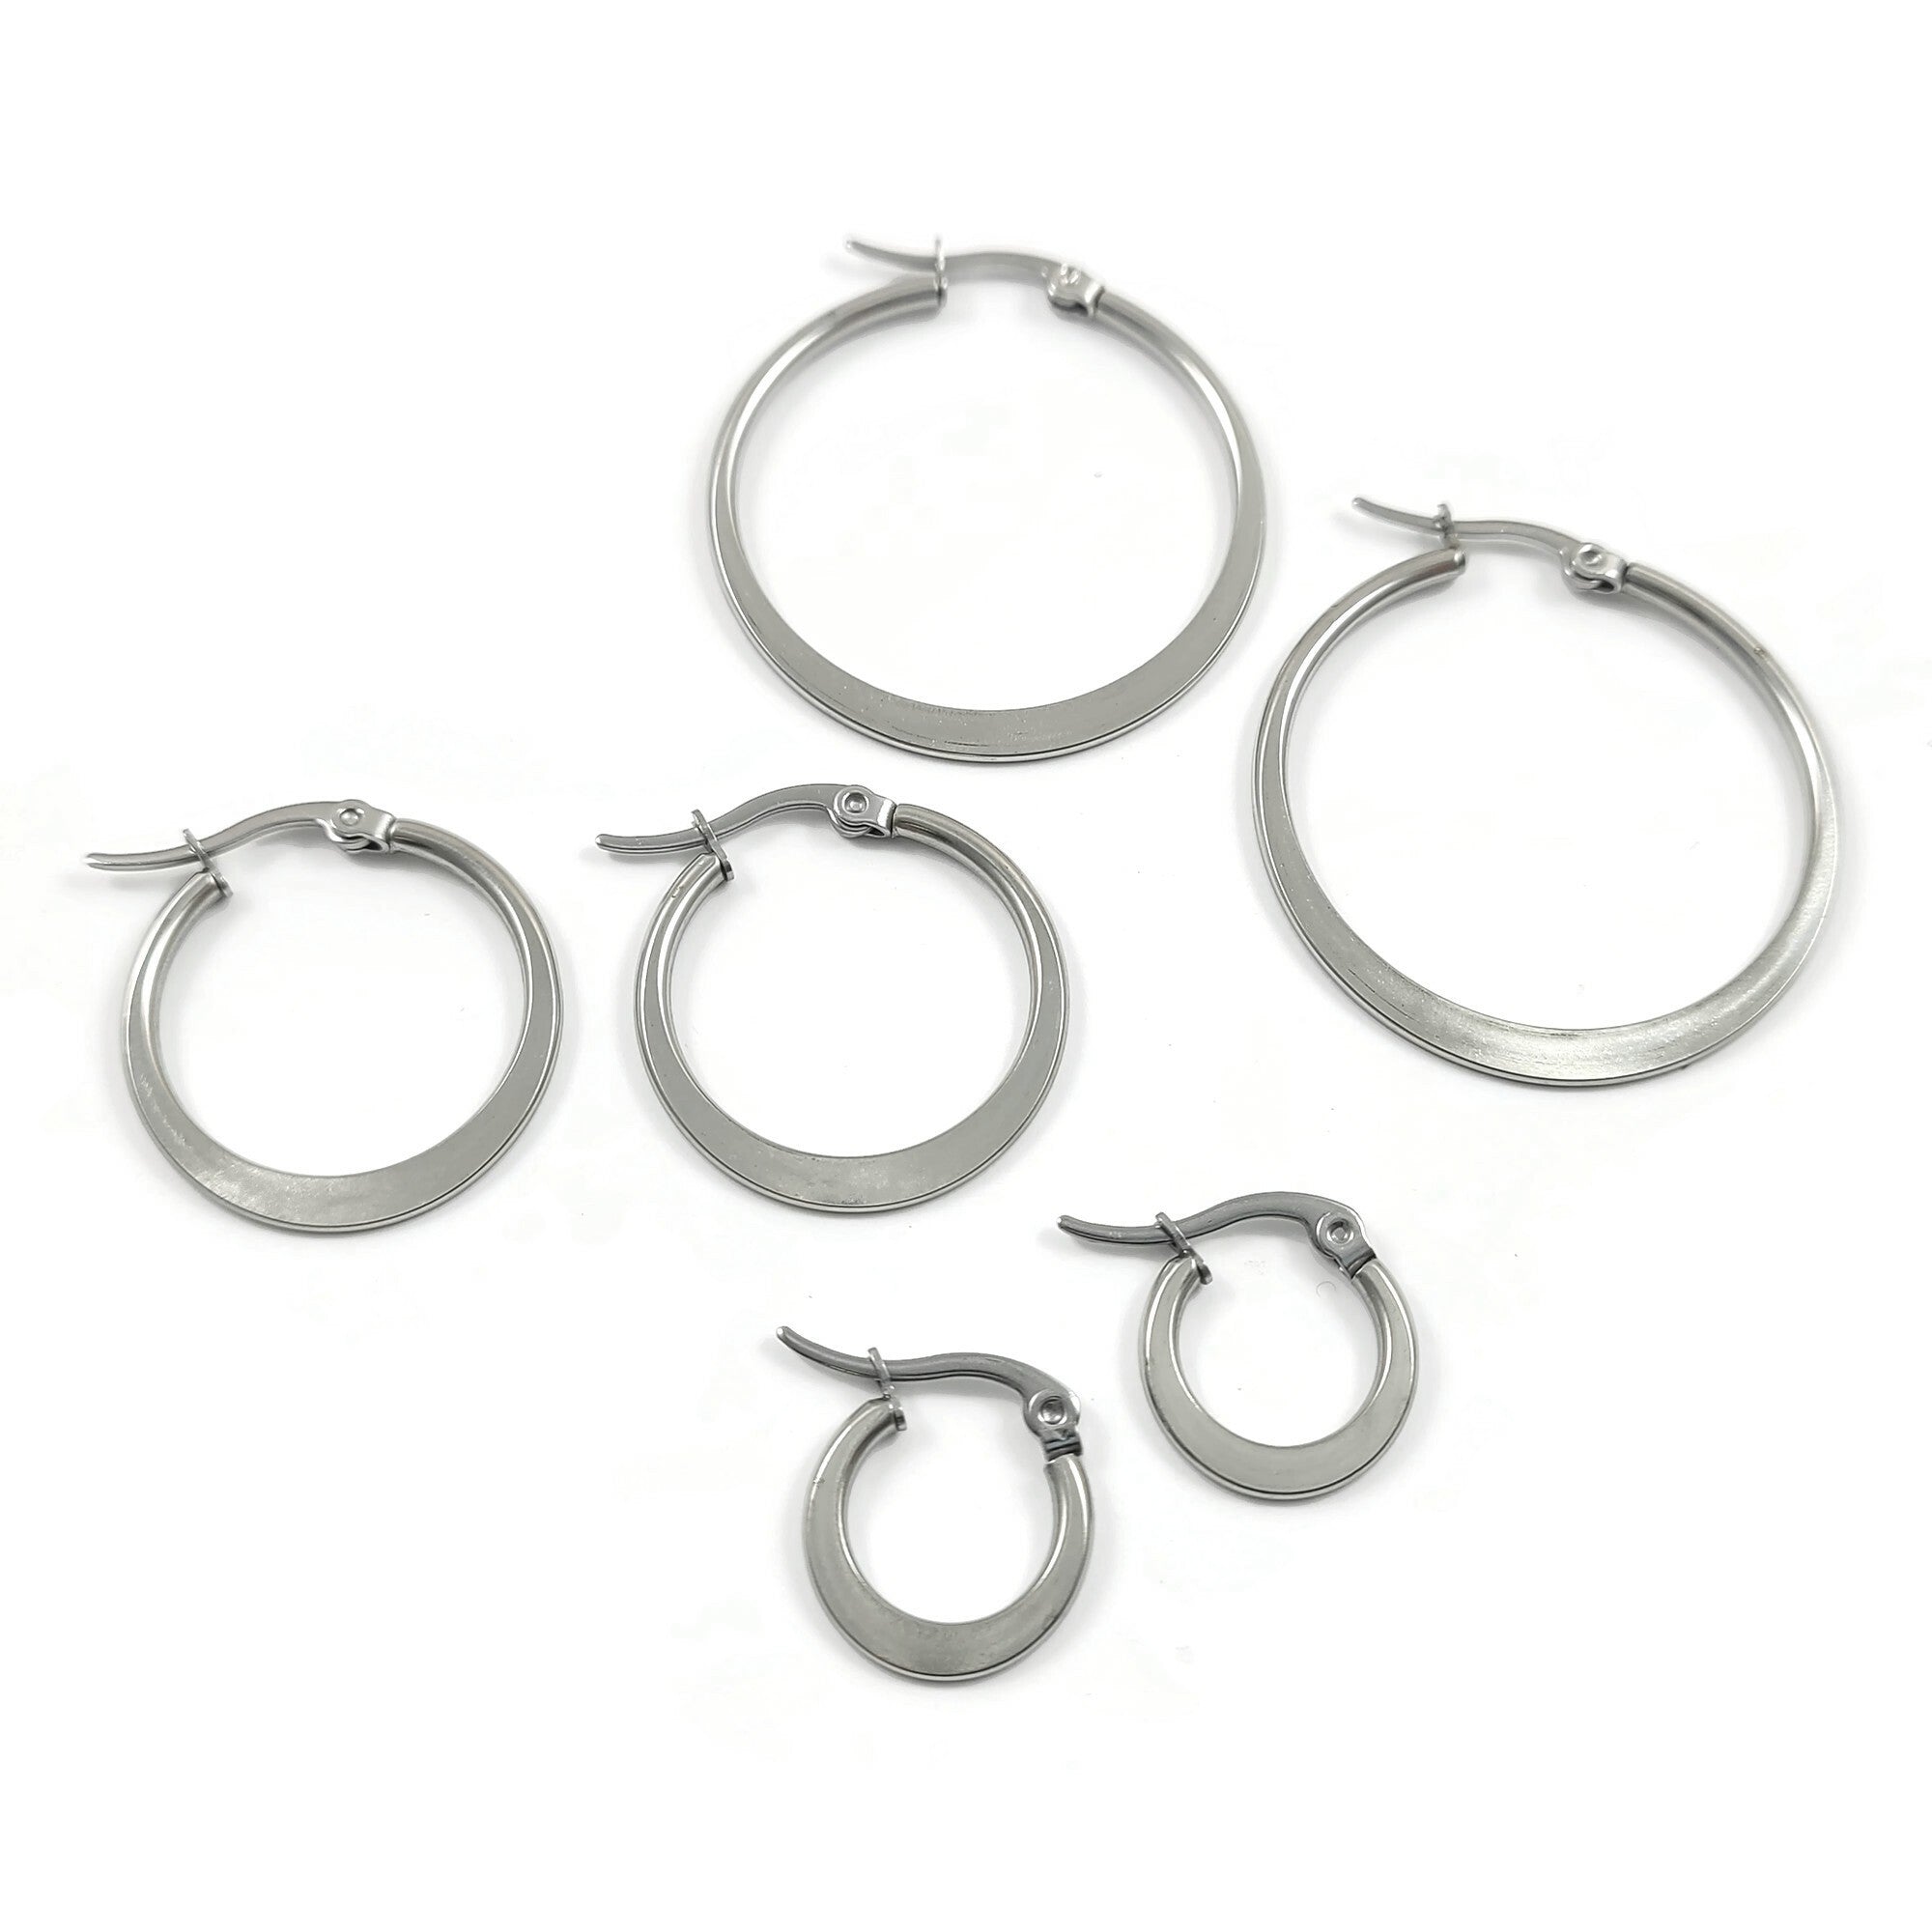 Silver stainless steel latch back earring hoops